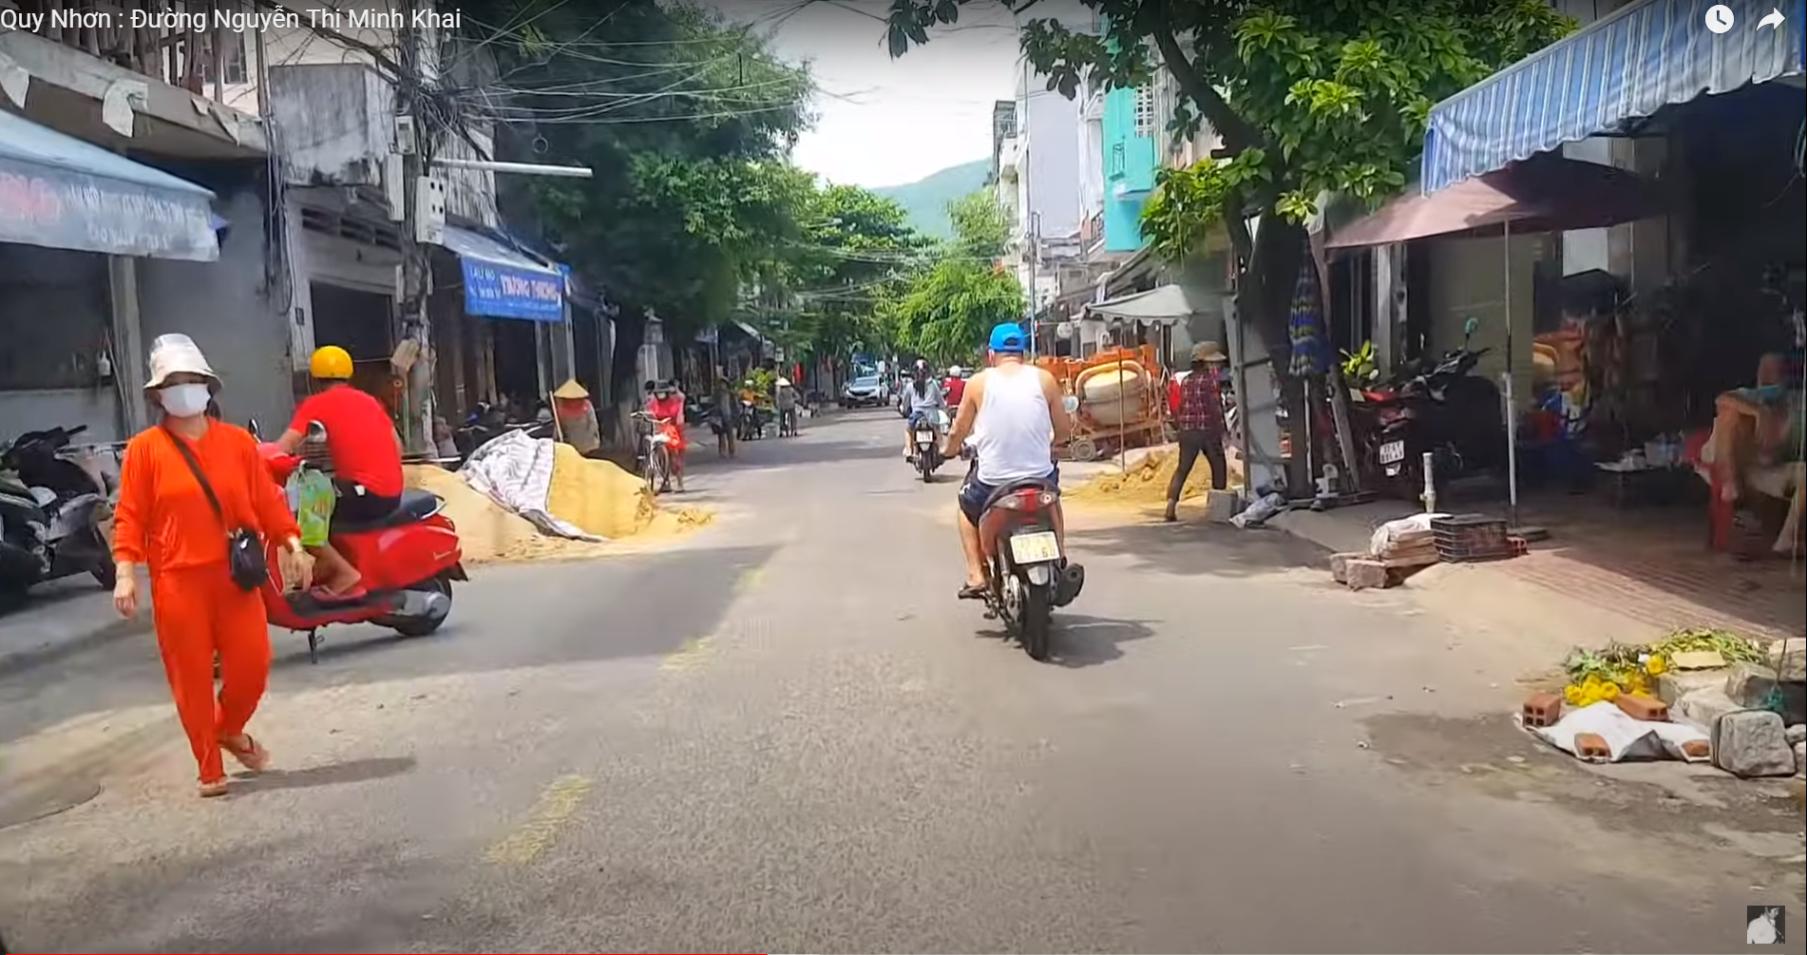 Hình ảnh Nguyễn Thị Minh Khai, Quy Nhơn, Bình Định